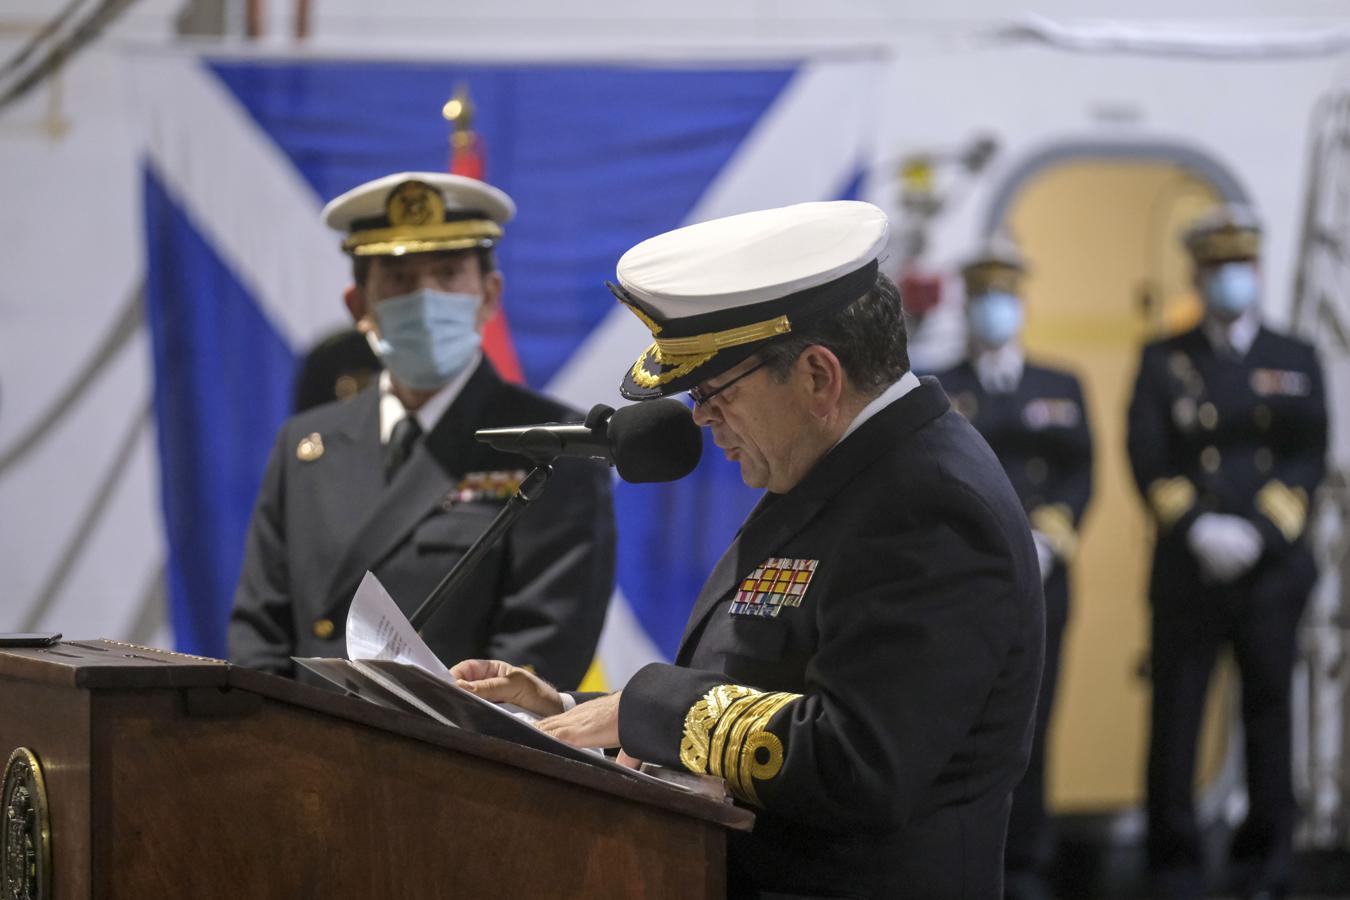 En imágenes: La toma de posesión del nuevo Almirante de la Flota a bordo del Juan Carlos I